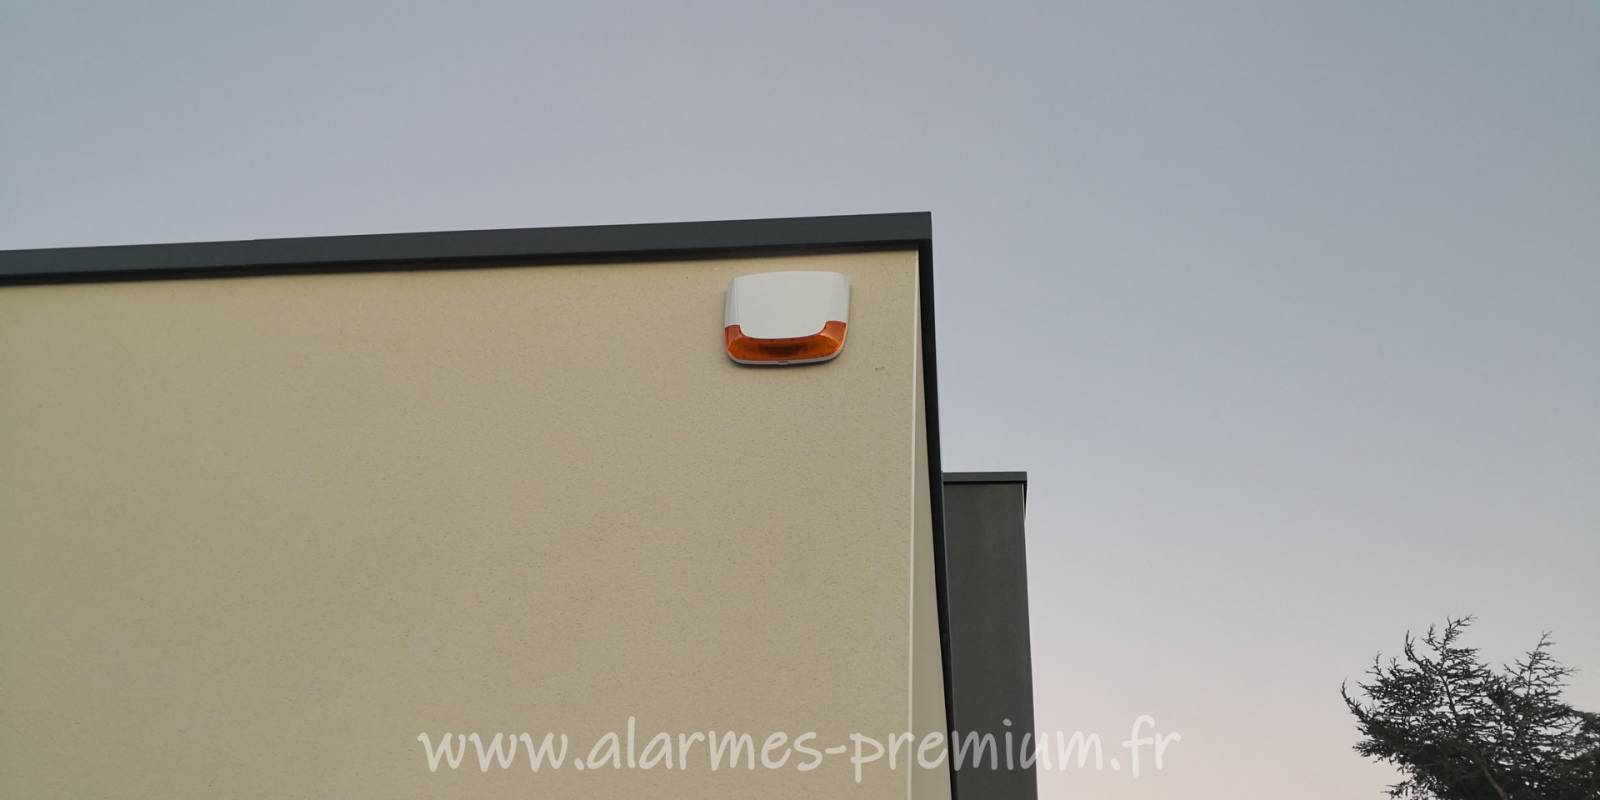 Achat et installation d'une alarme sans fil et détection extérieure près de Nîmes